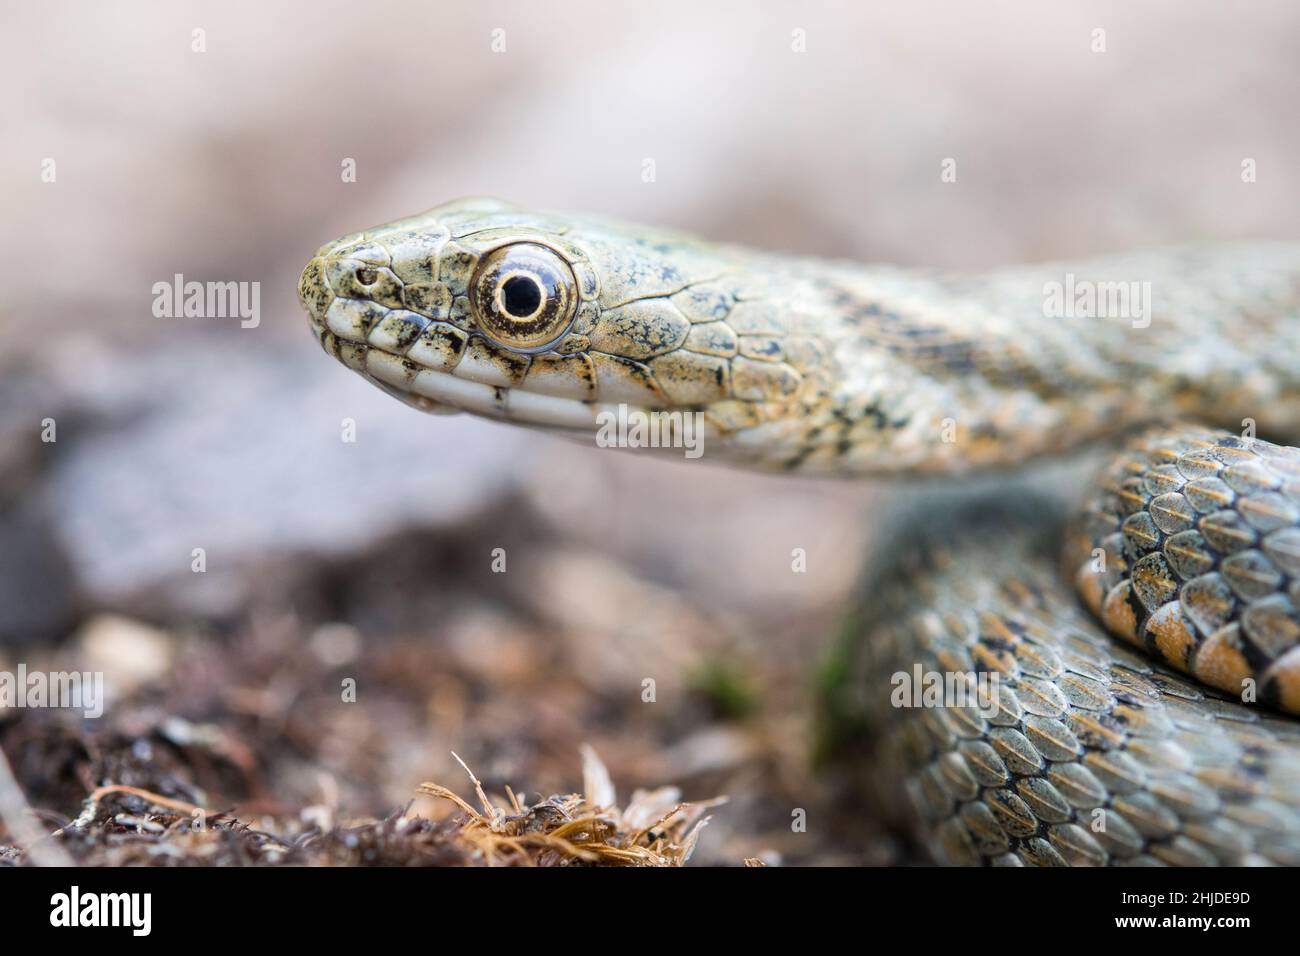 Serpiente de dados (Natrix tessellata) serpiente semiacuática de la familia Natricidae. Foto de stock